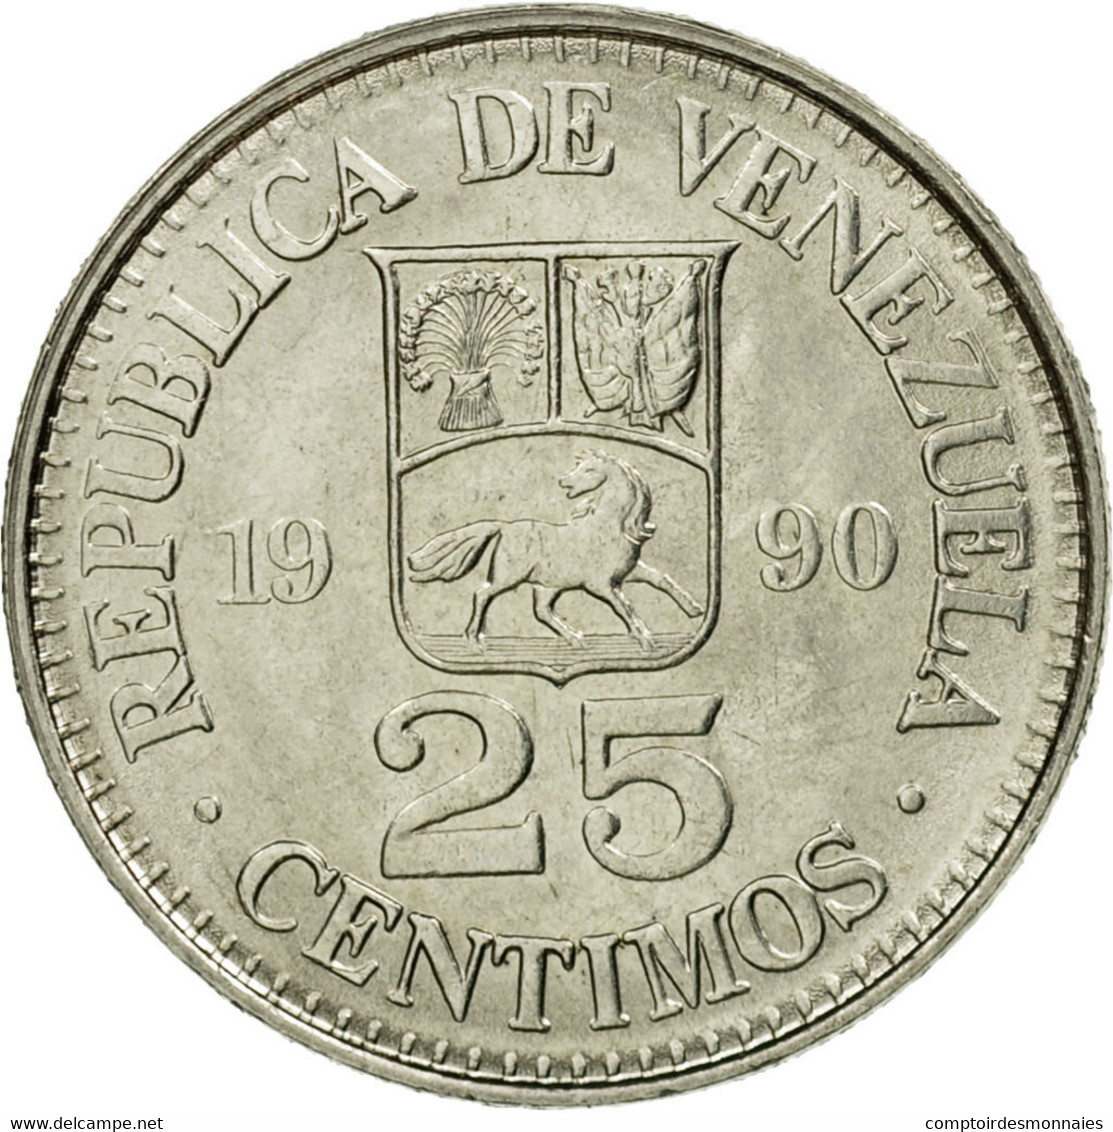 Monnaie, Venezuela, 25 Centimos, 1990, TTB, Nickel Clad Steel, KM:50a - Venezuela